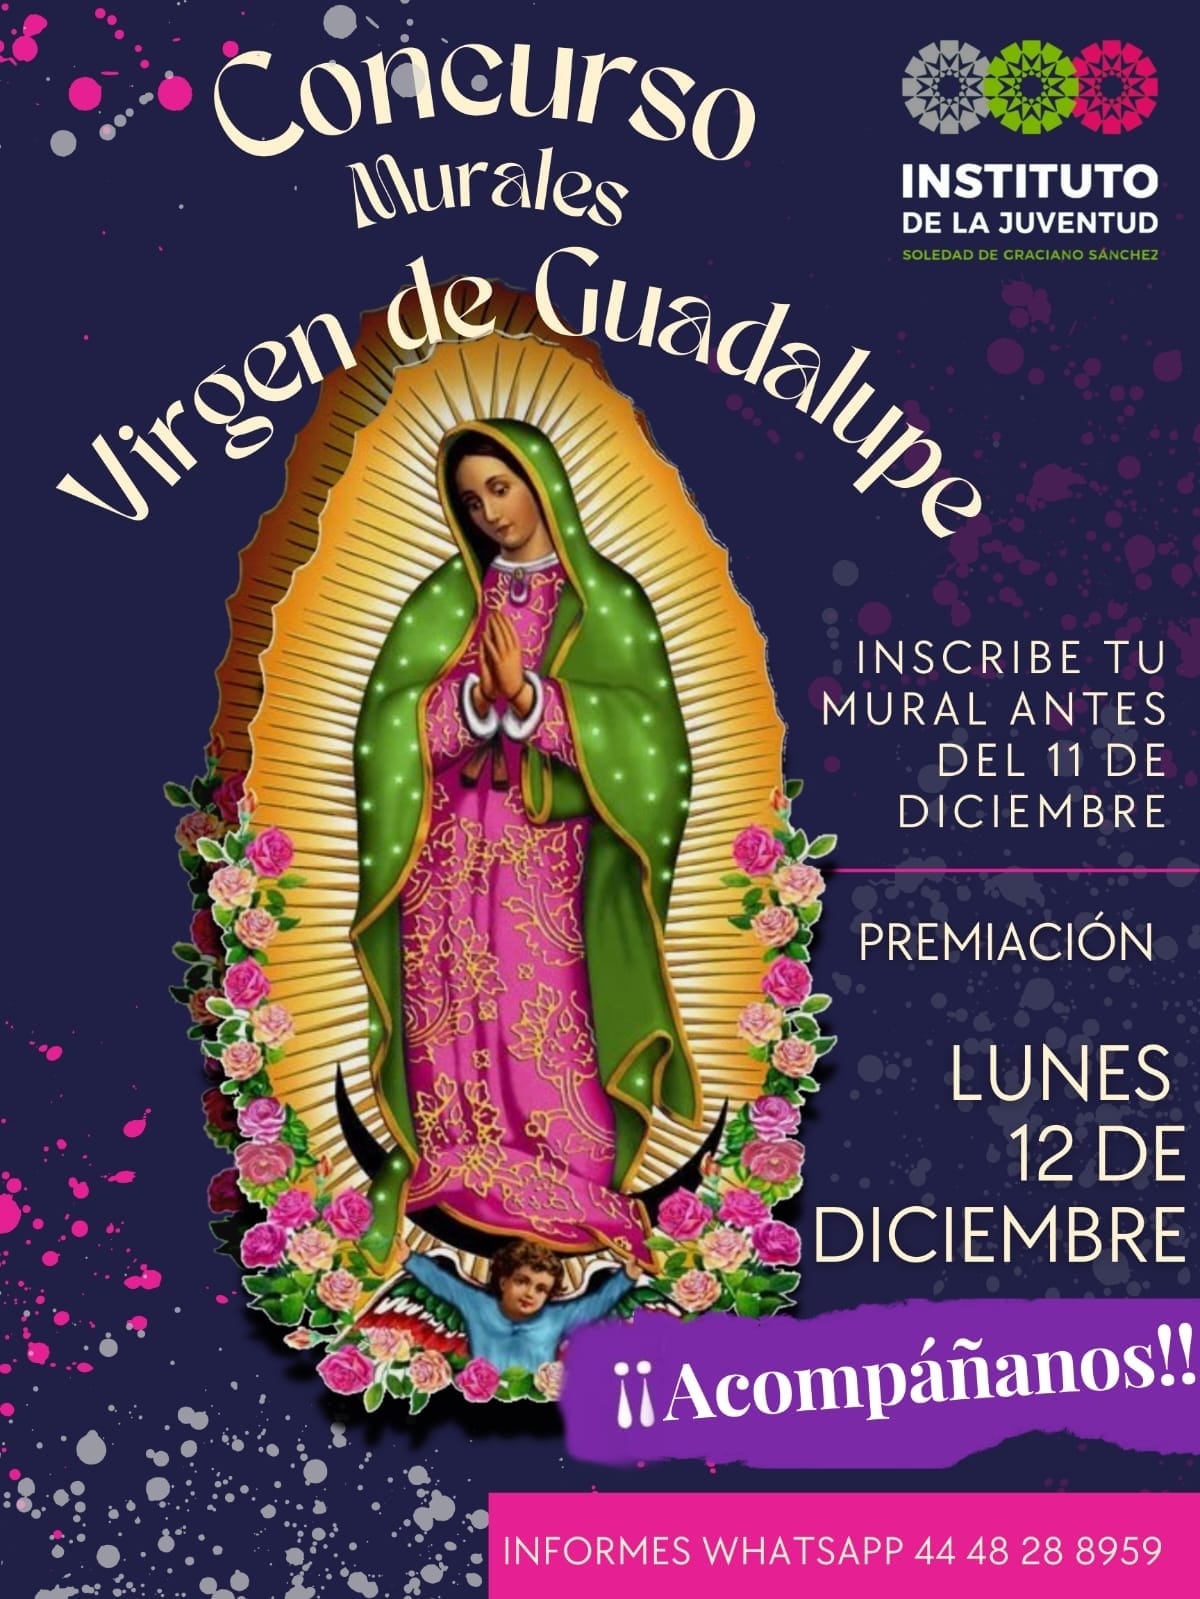 Invitan a concurso de murales de la Virgen de Guadalupe en Soledad